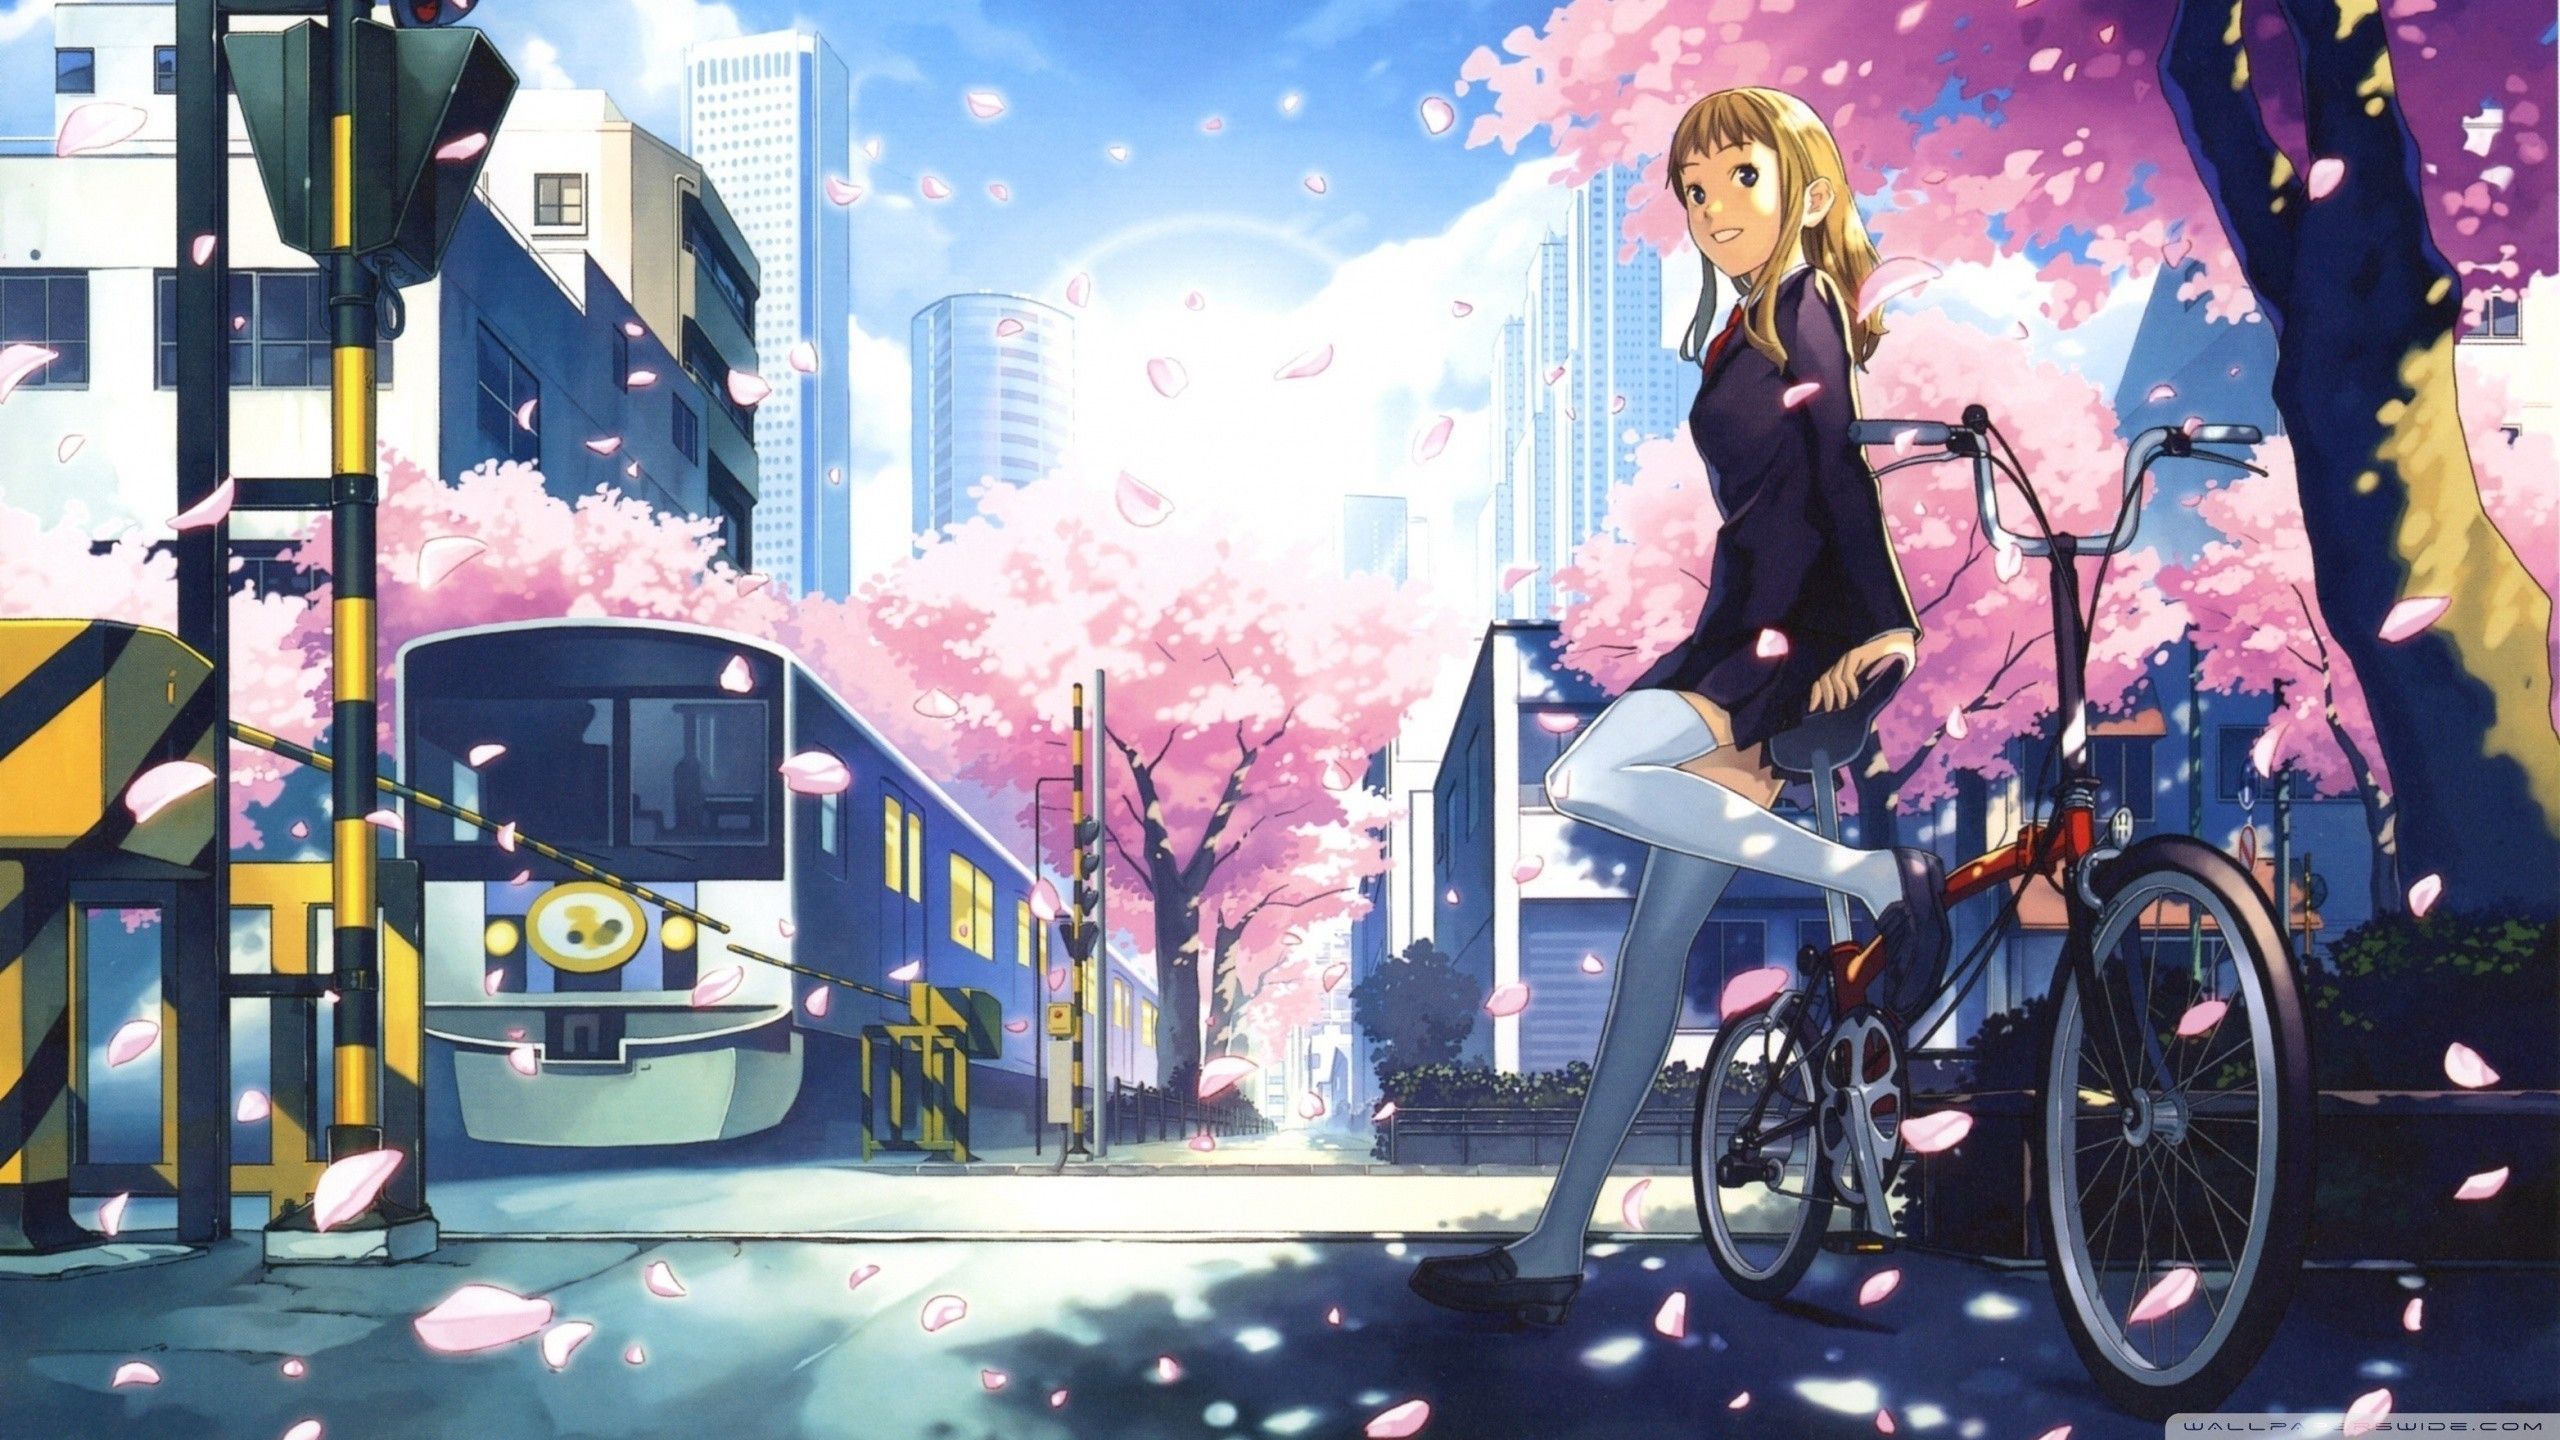 Aesthetic Anime Desktop Wallpaper